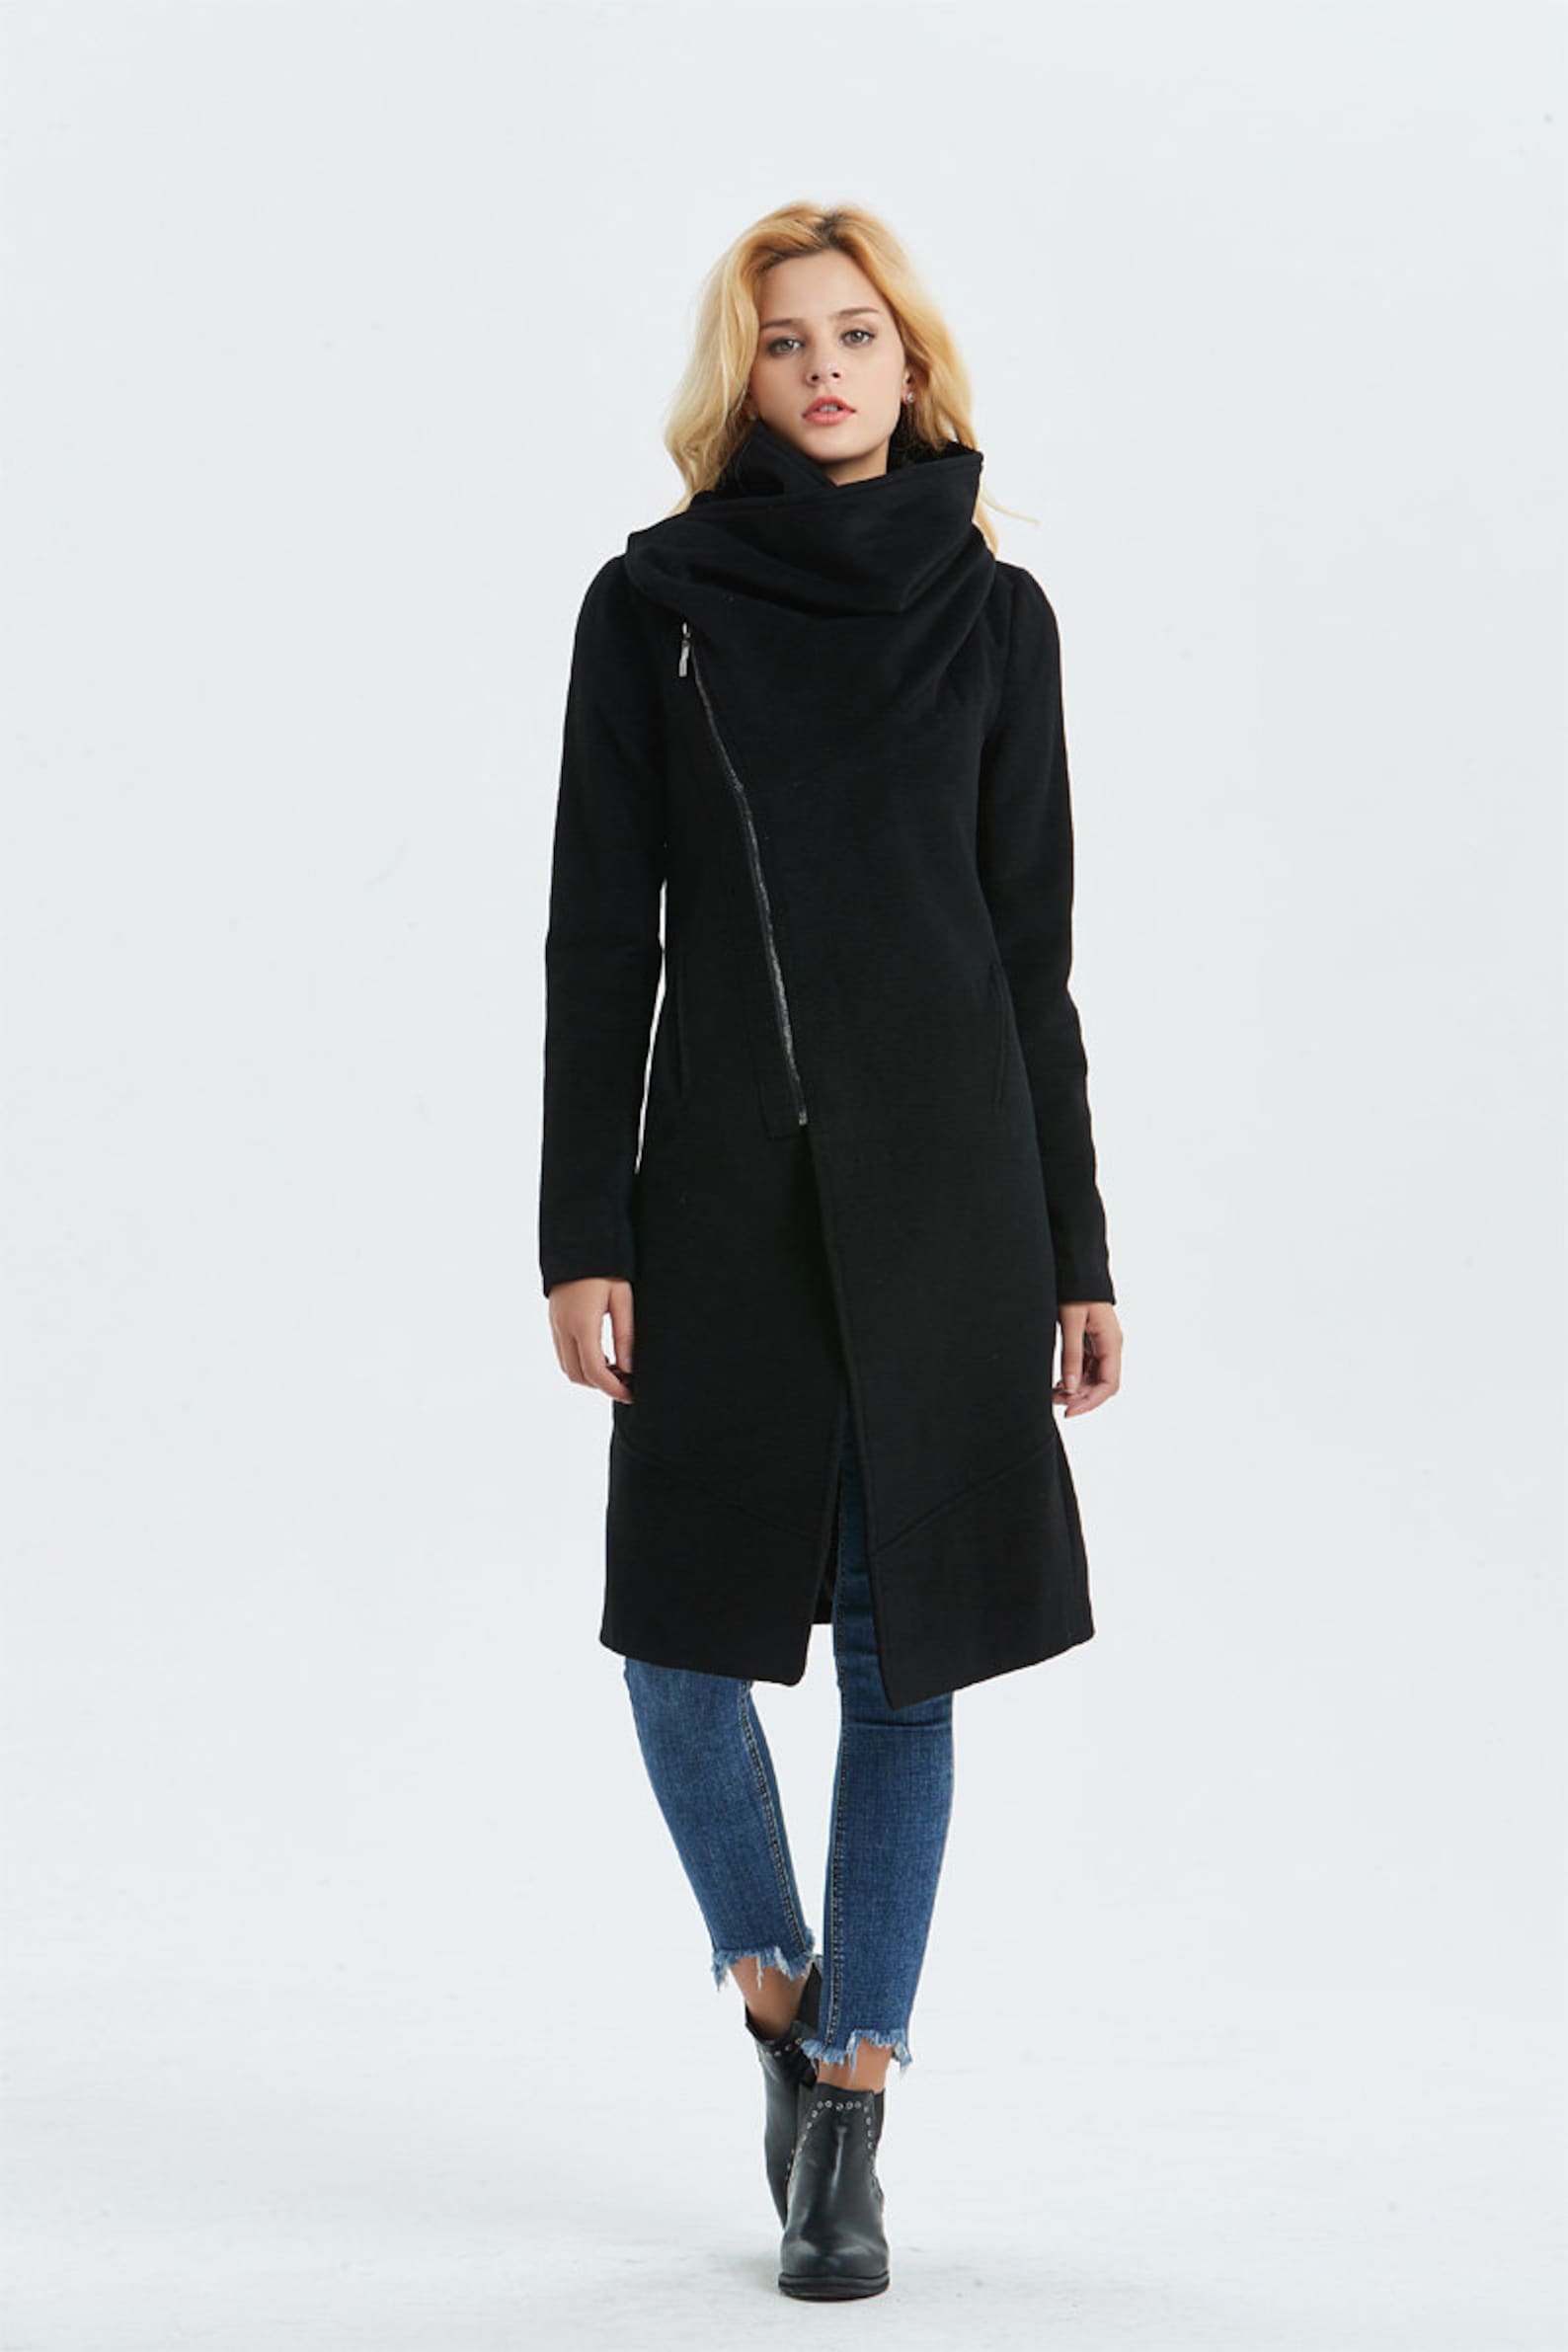 Wool Coat Asymmetrical Wool Coat Black Wool Coat Warm | Etsy